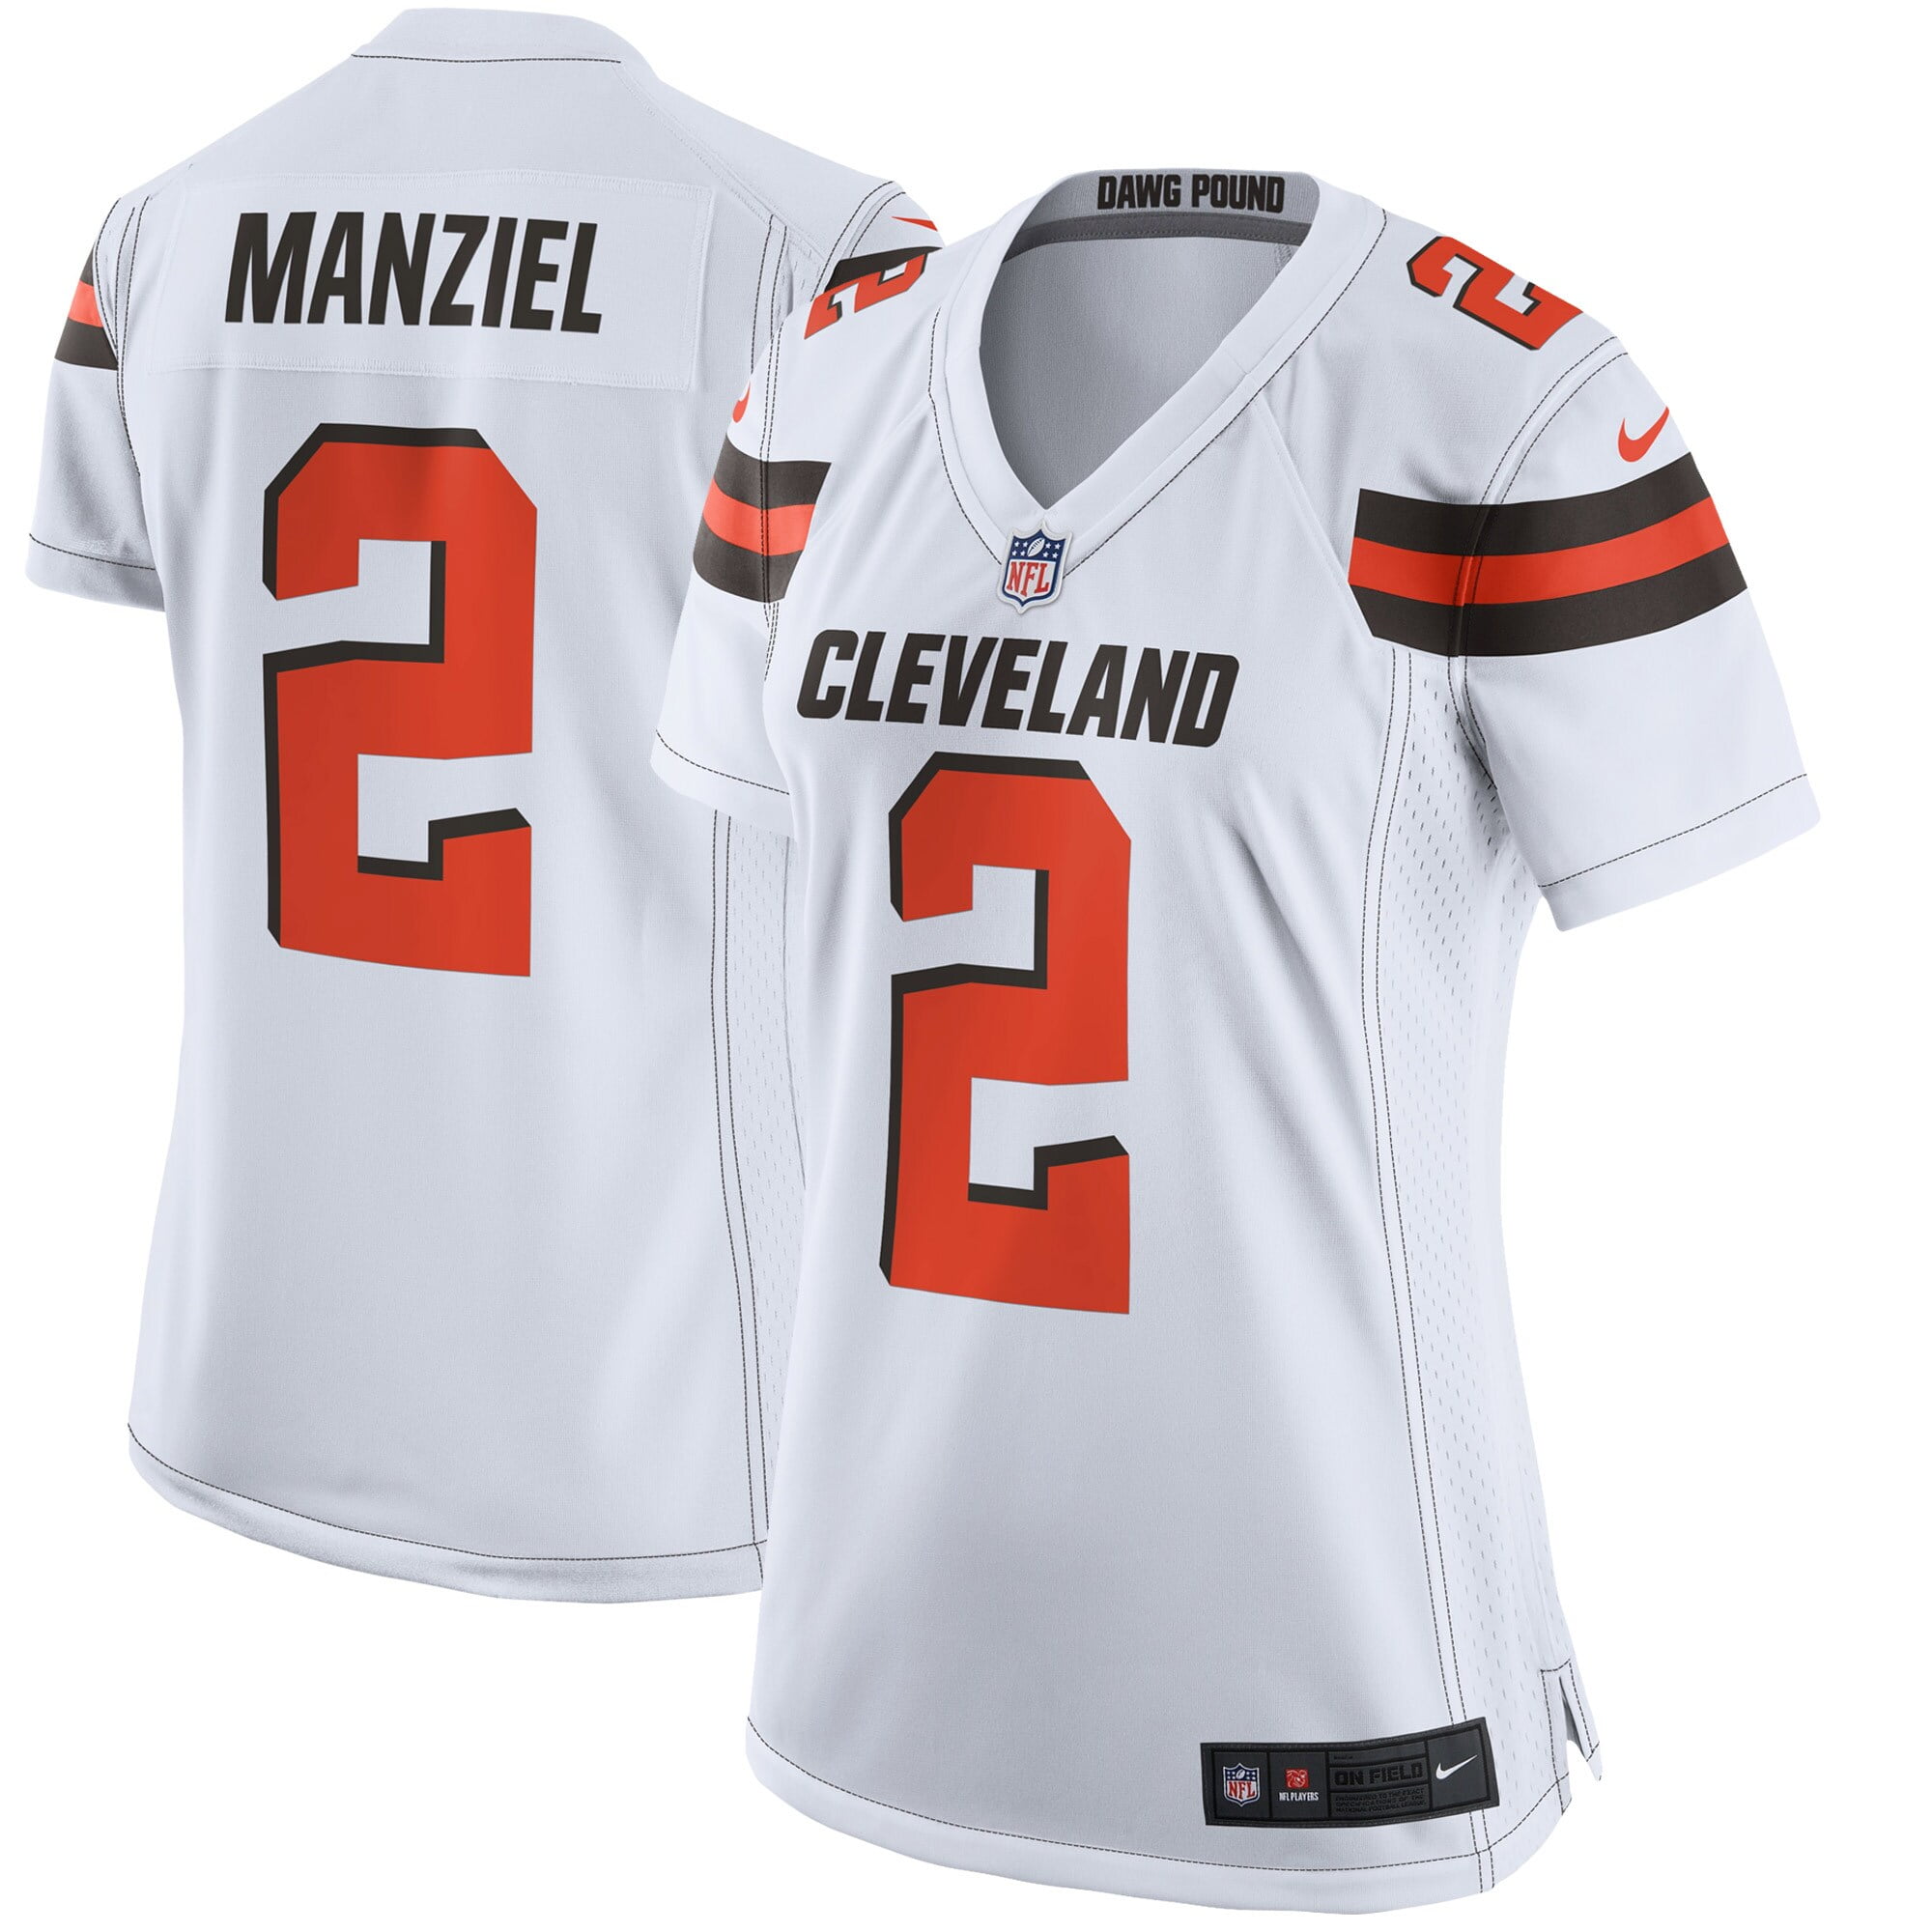 مكونات الكورن فليكس Nike Cleveland Browns #2 Johnny Manziel 2015 White Elite Jersey ايرينا